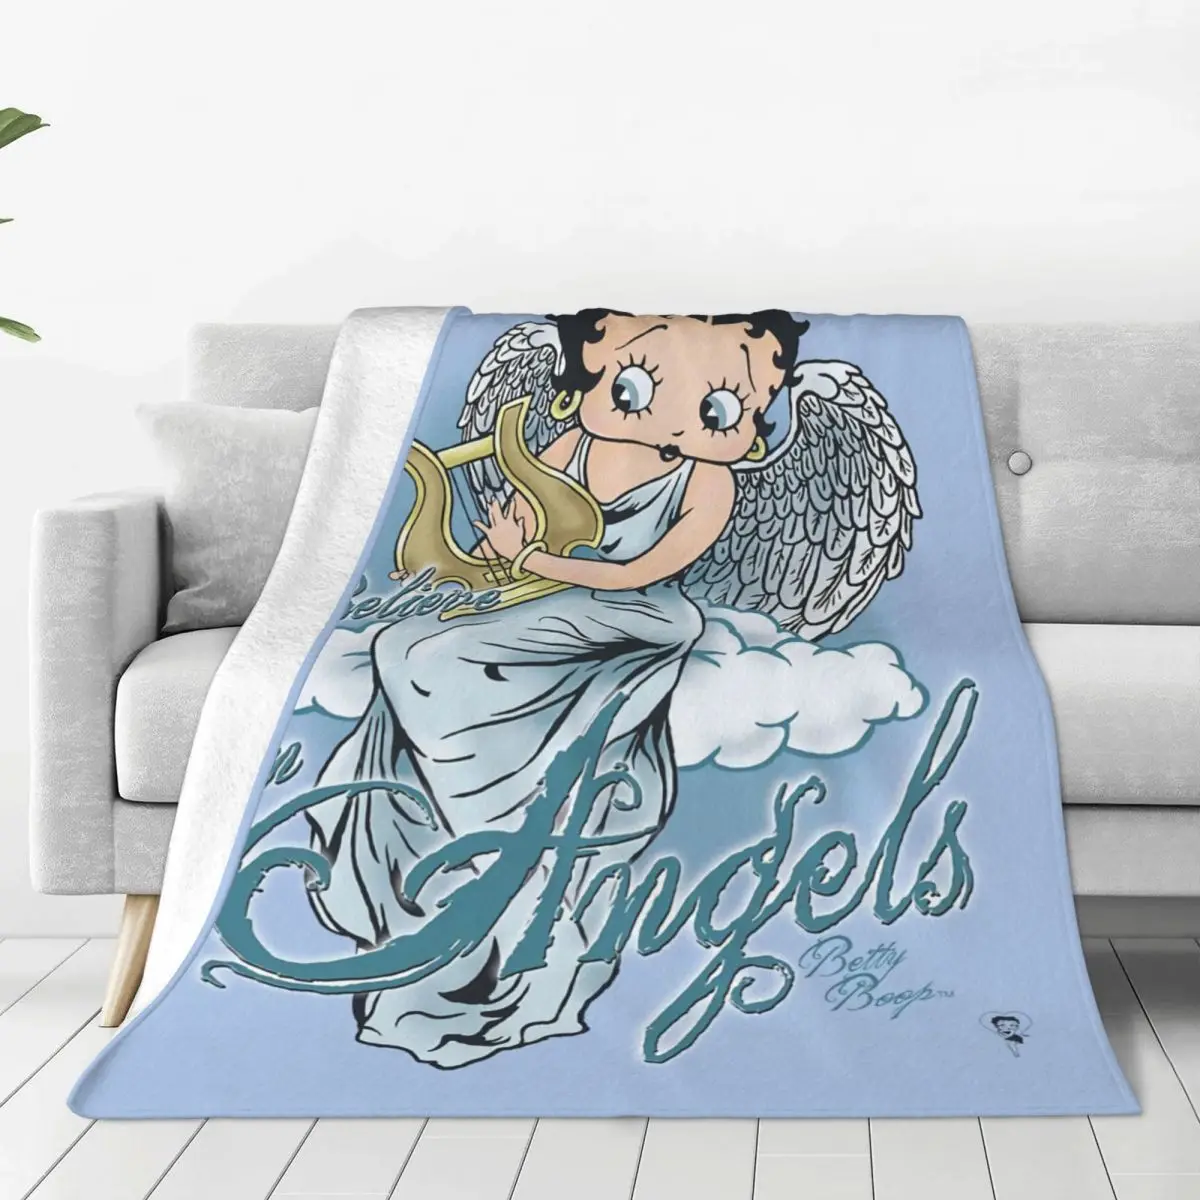 

Одеяло в виде ангелов Boop I Believe In, теплое флисовое мягкое Фланелевое покрывало s для кровати, дивана, офиса, весна-осень